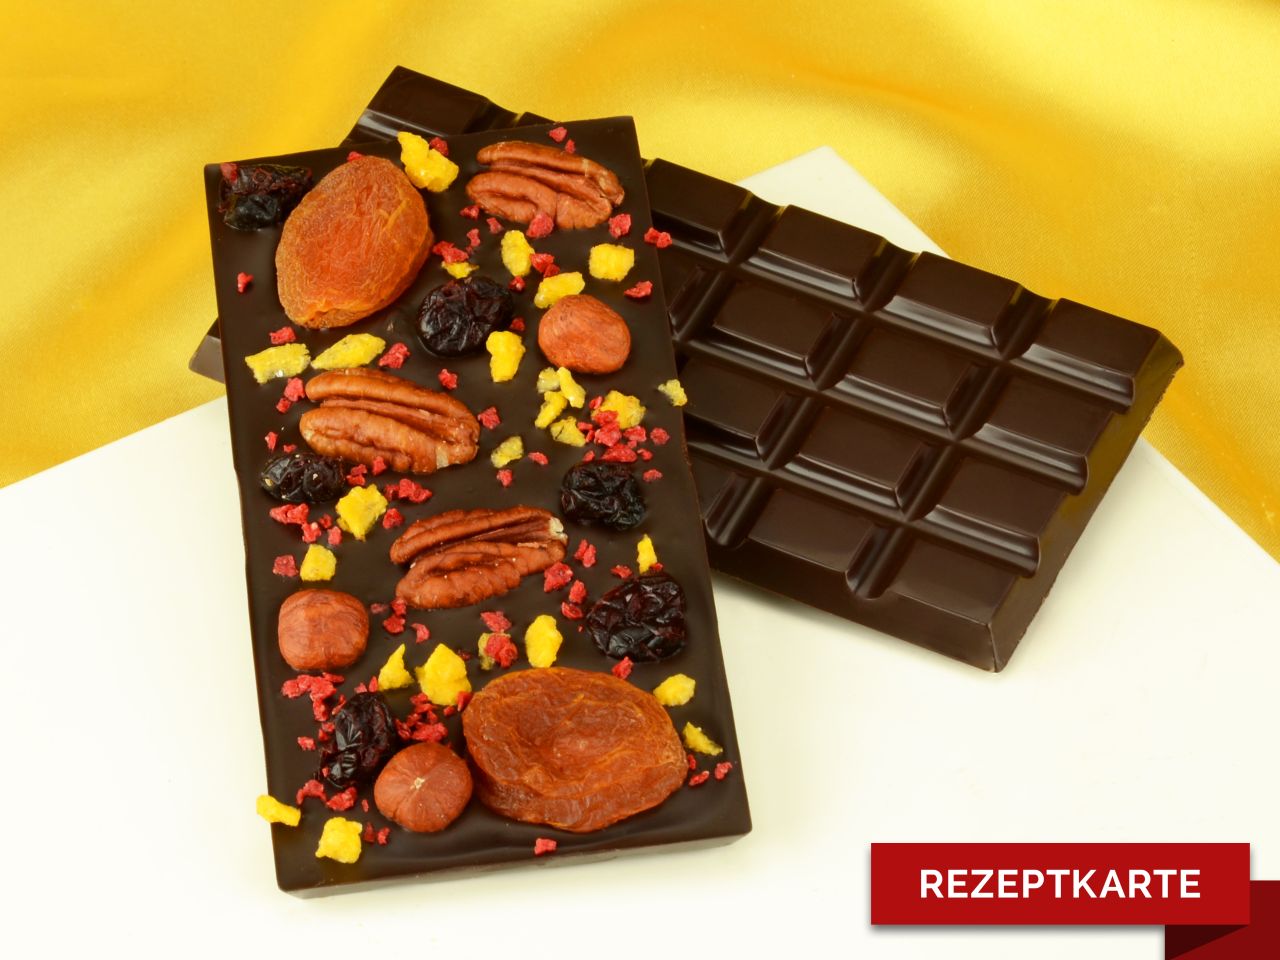 Schokoladentafel Frucht-Crunch Rezeptkarte | Schokoladen-Tafeln ...